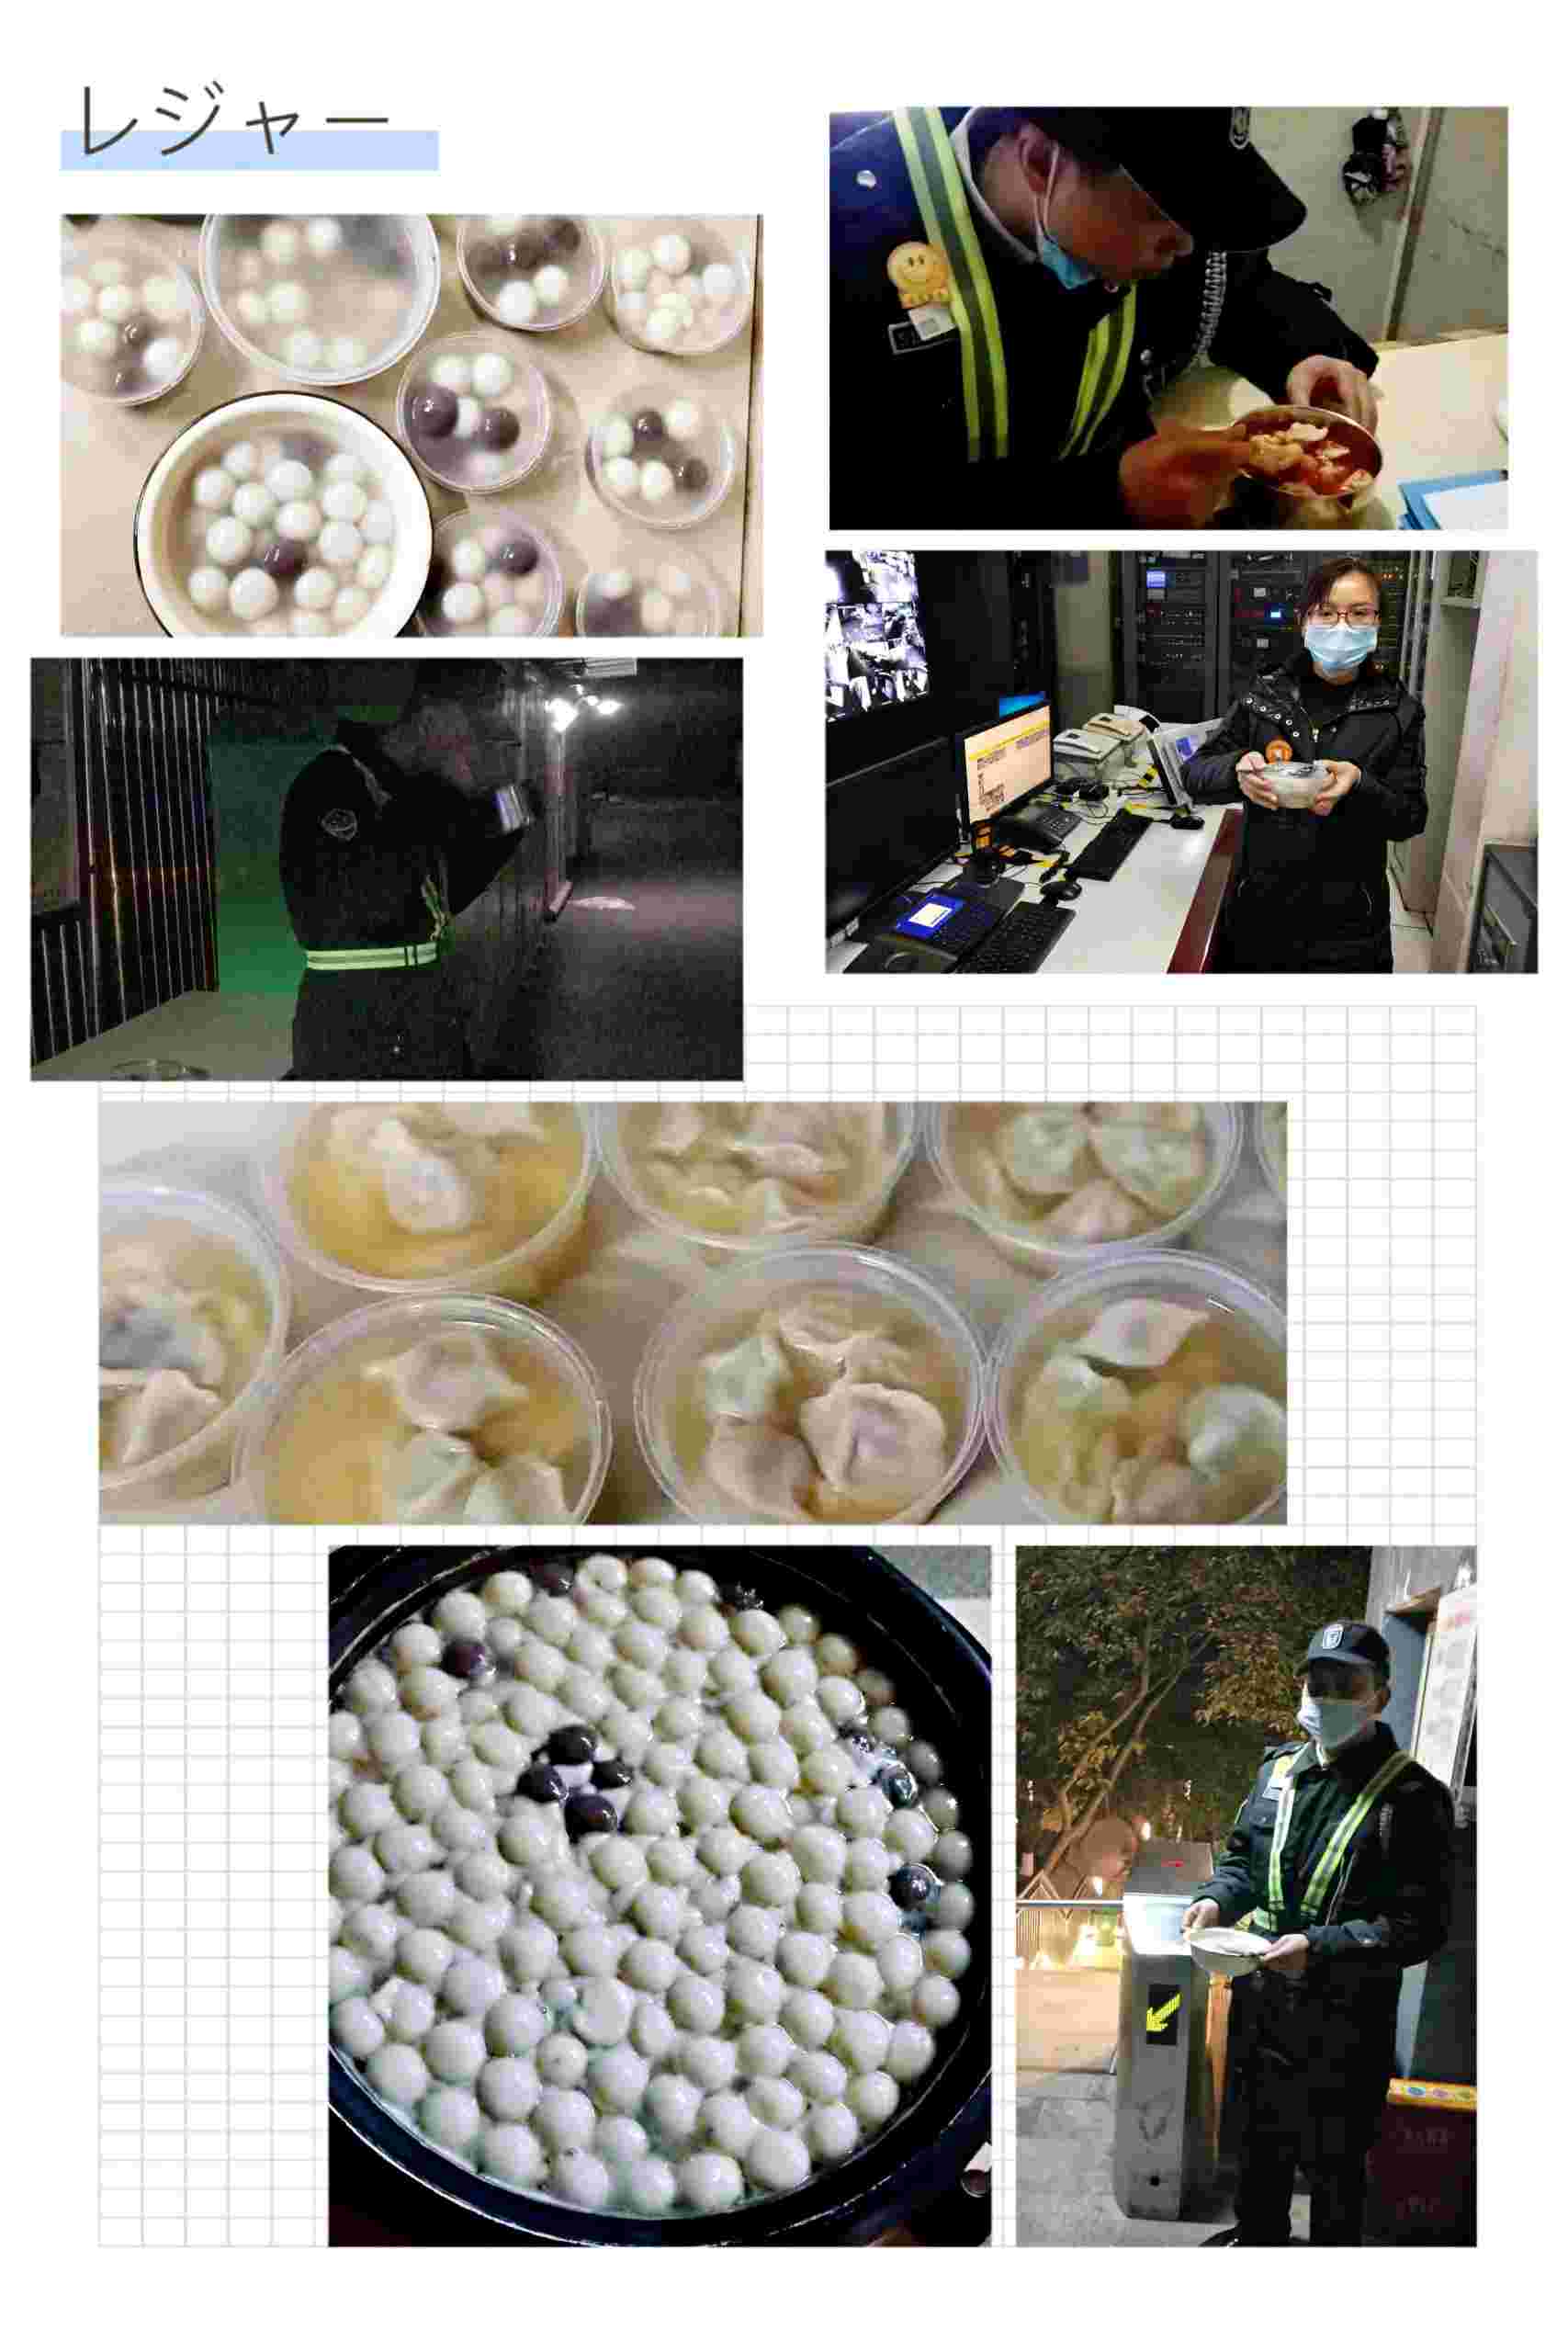 成都万科物业服务有限公司重庆分公司 环境照片活动图片